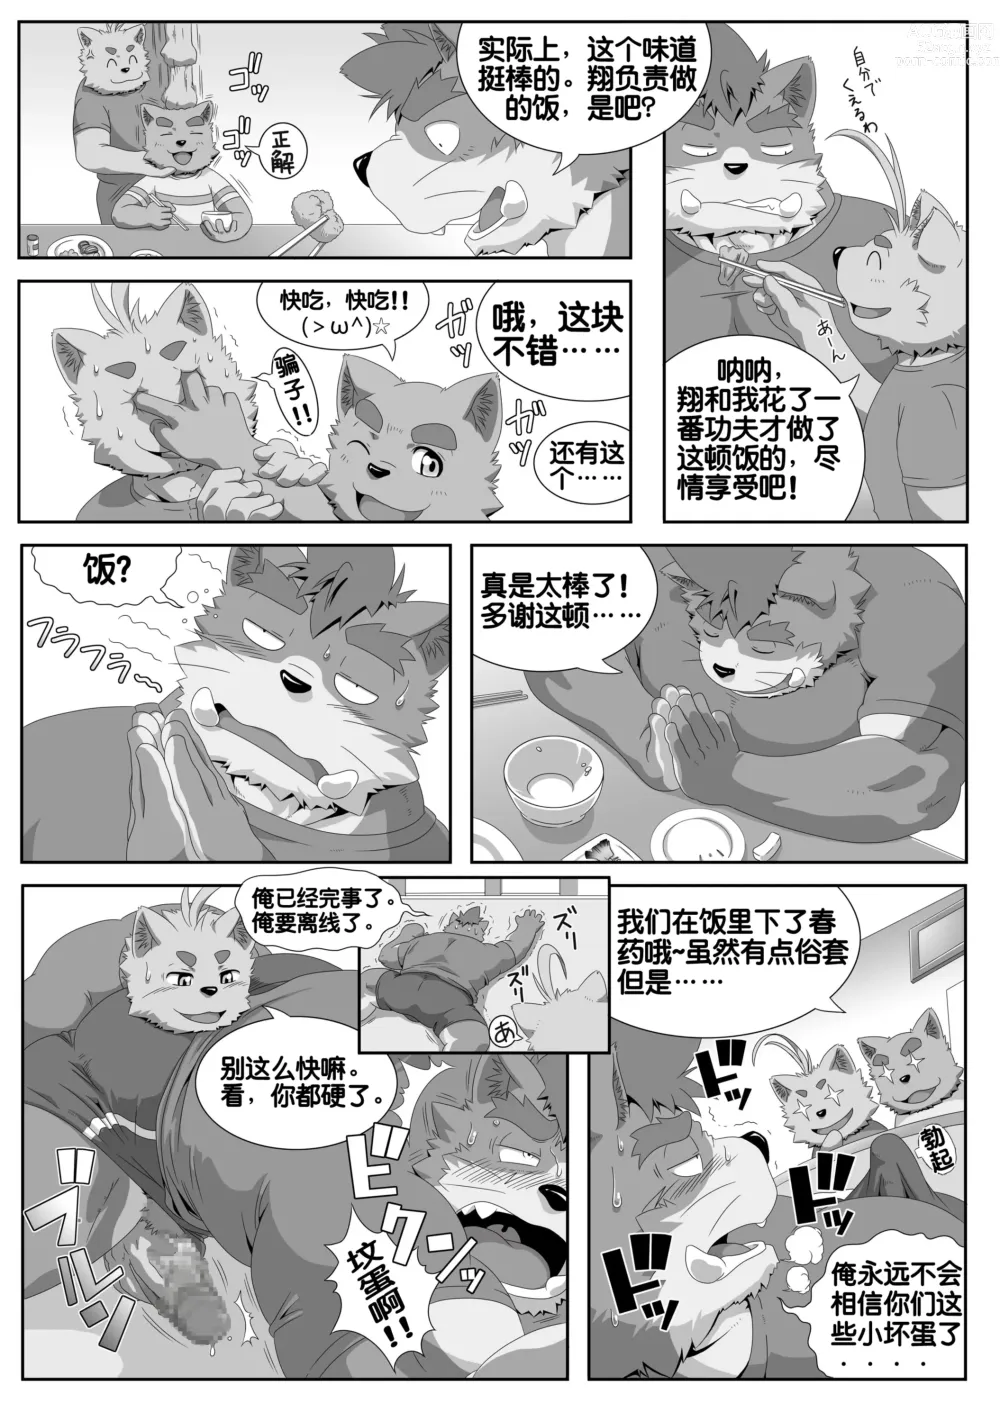 Page 26 of doujinshi Oshiete!Banchou!!